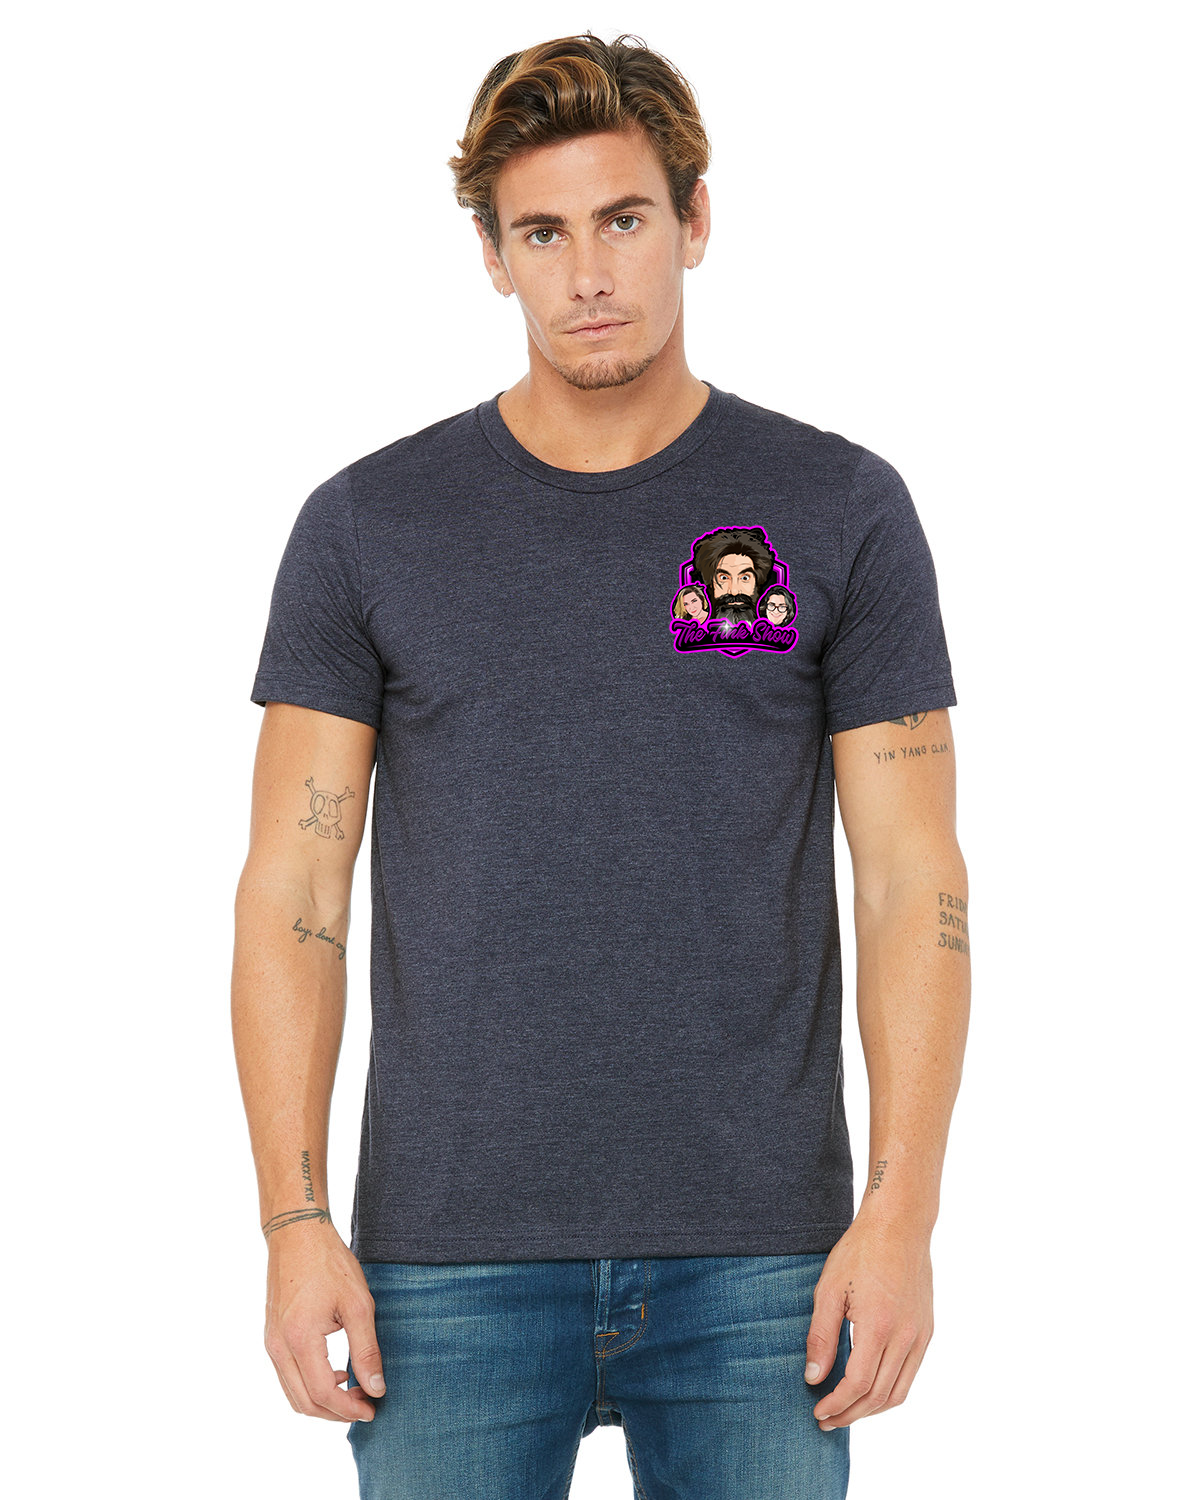 Fink Show Men's Crew Neck T-shirt Pocket Sized V2.0 Logo